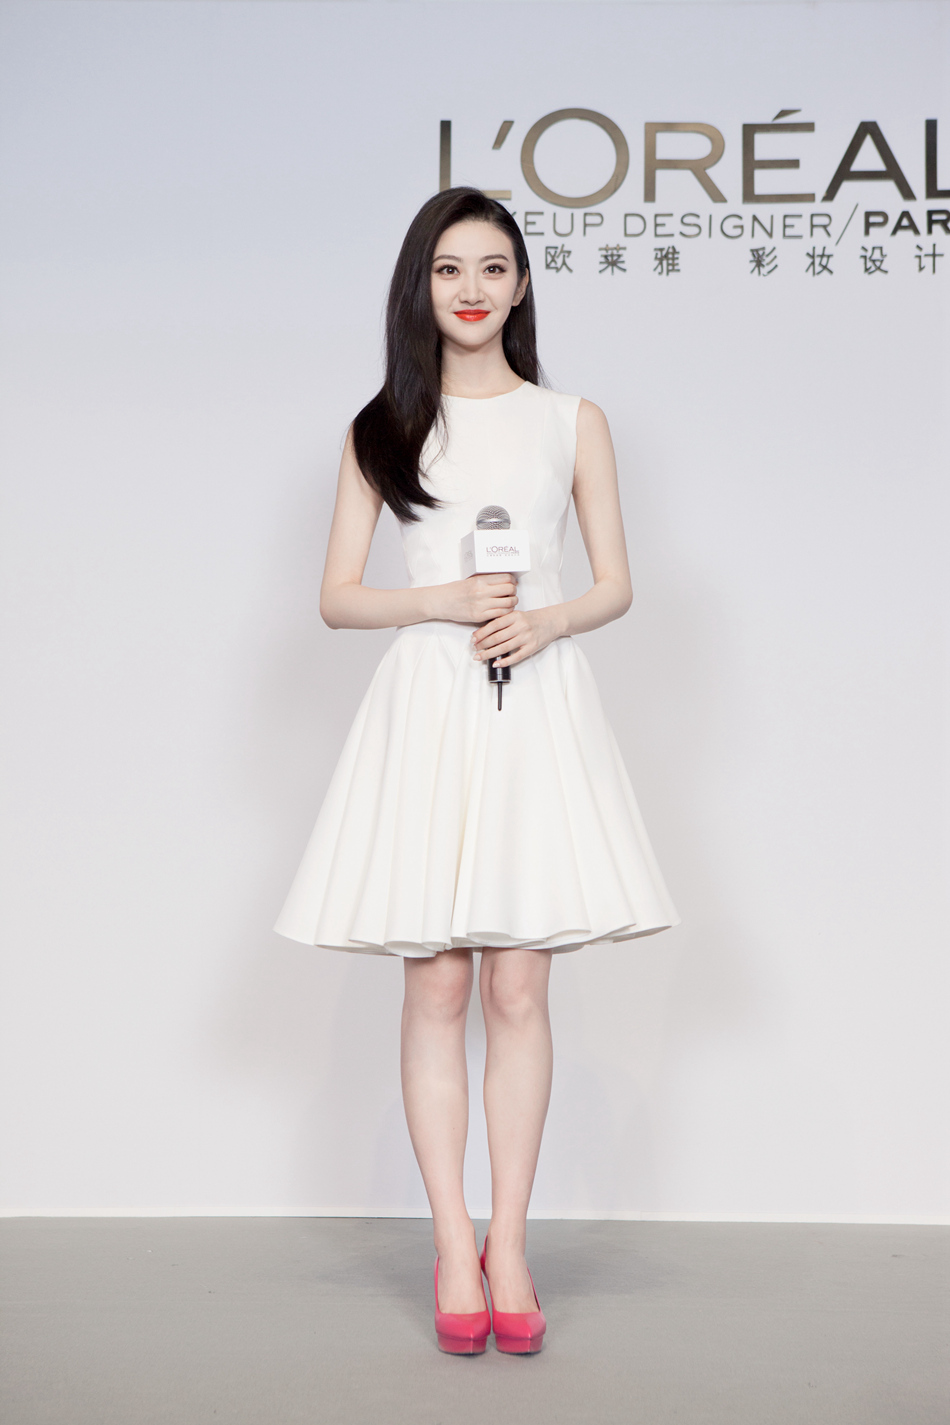 10月14日,全球第一美妆品牌欧莱雅正式宣布携手新生代演员景甜作为